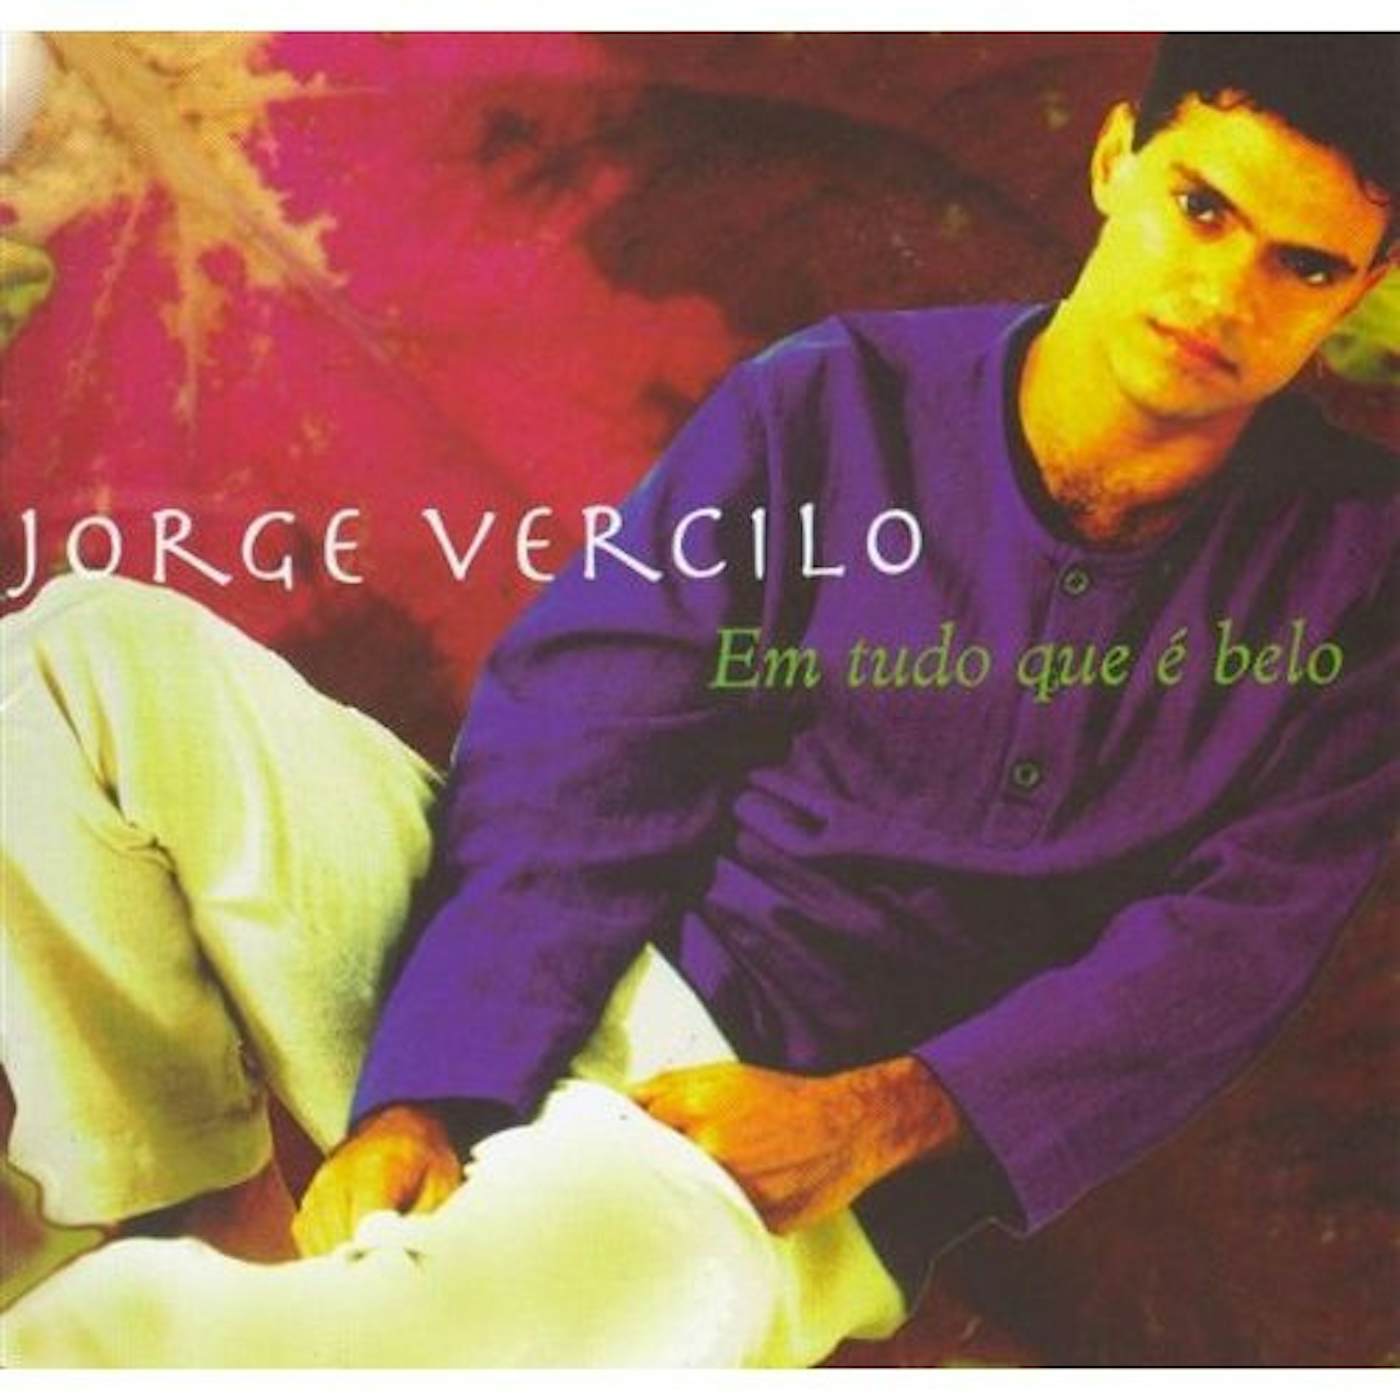 Jorge Vercilo EM TUDO QUE E BELO CD